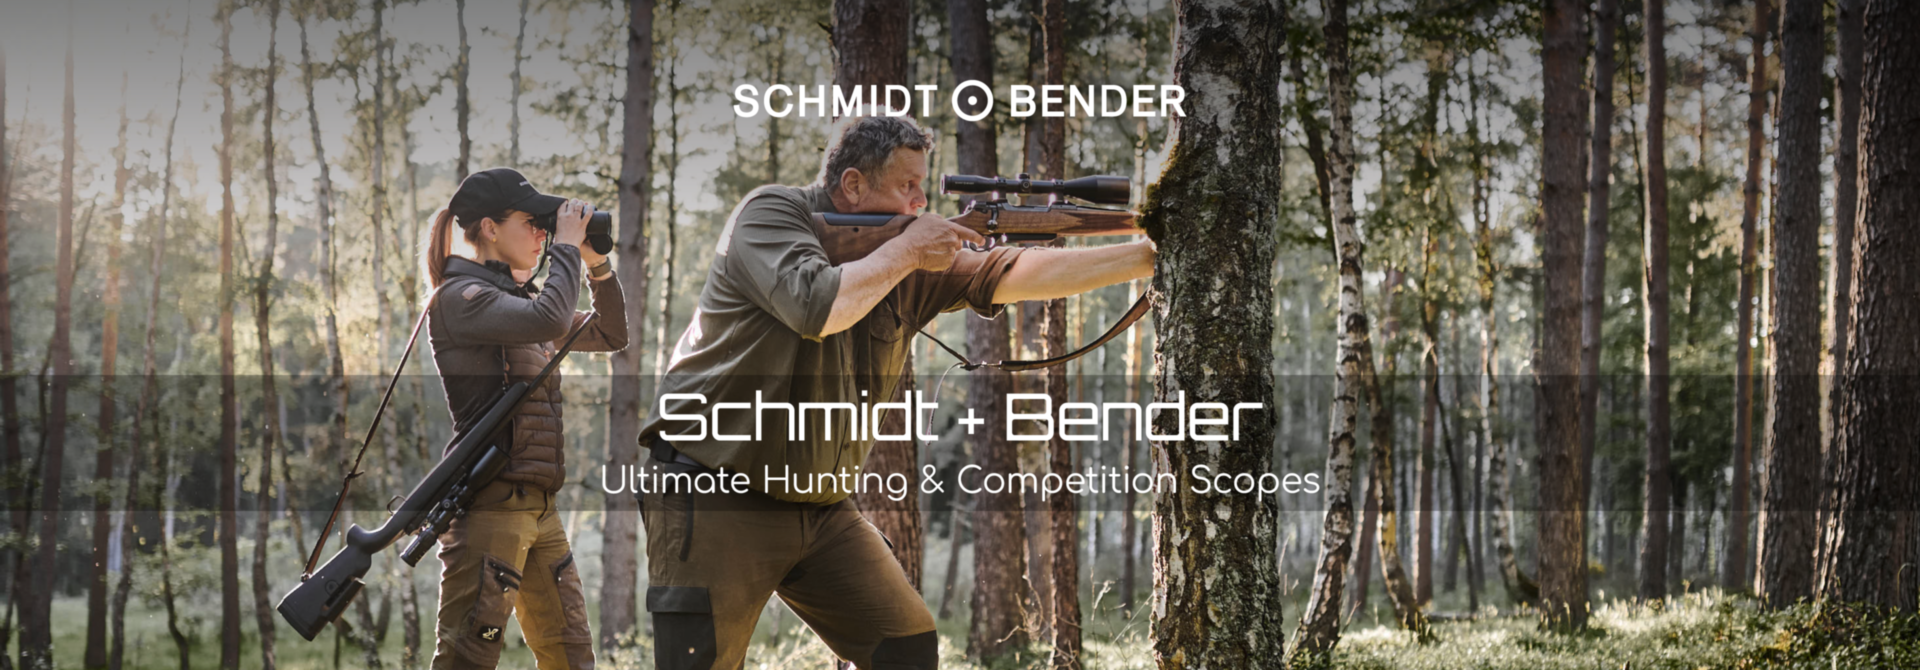 Schmidt+Bender